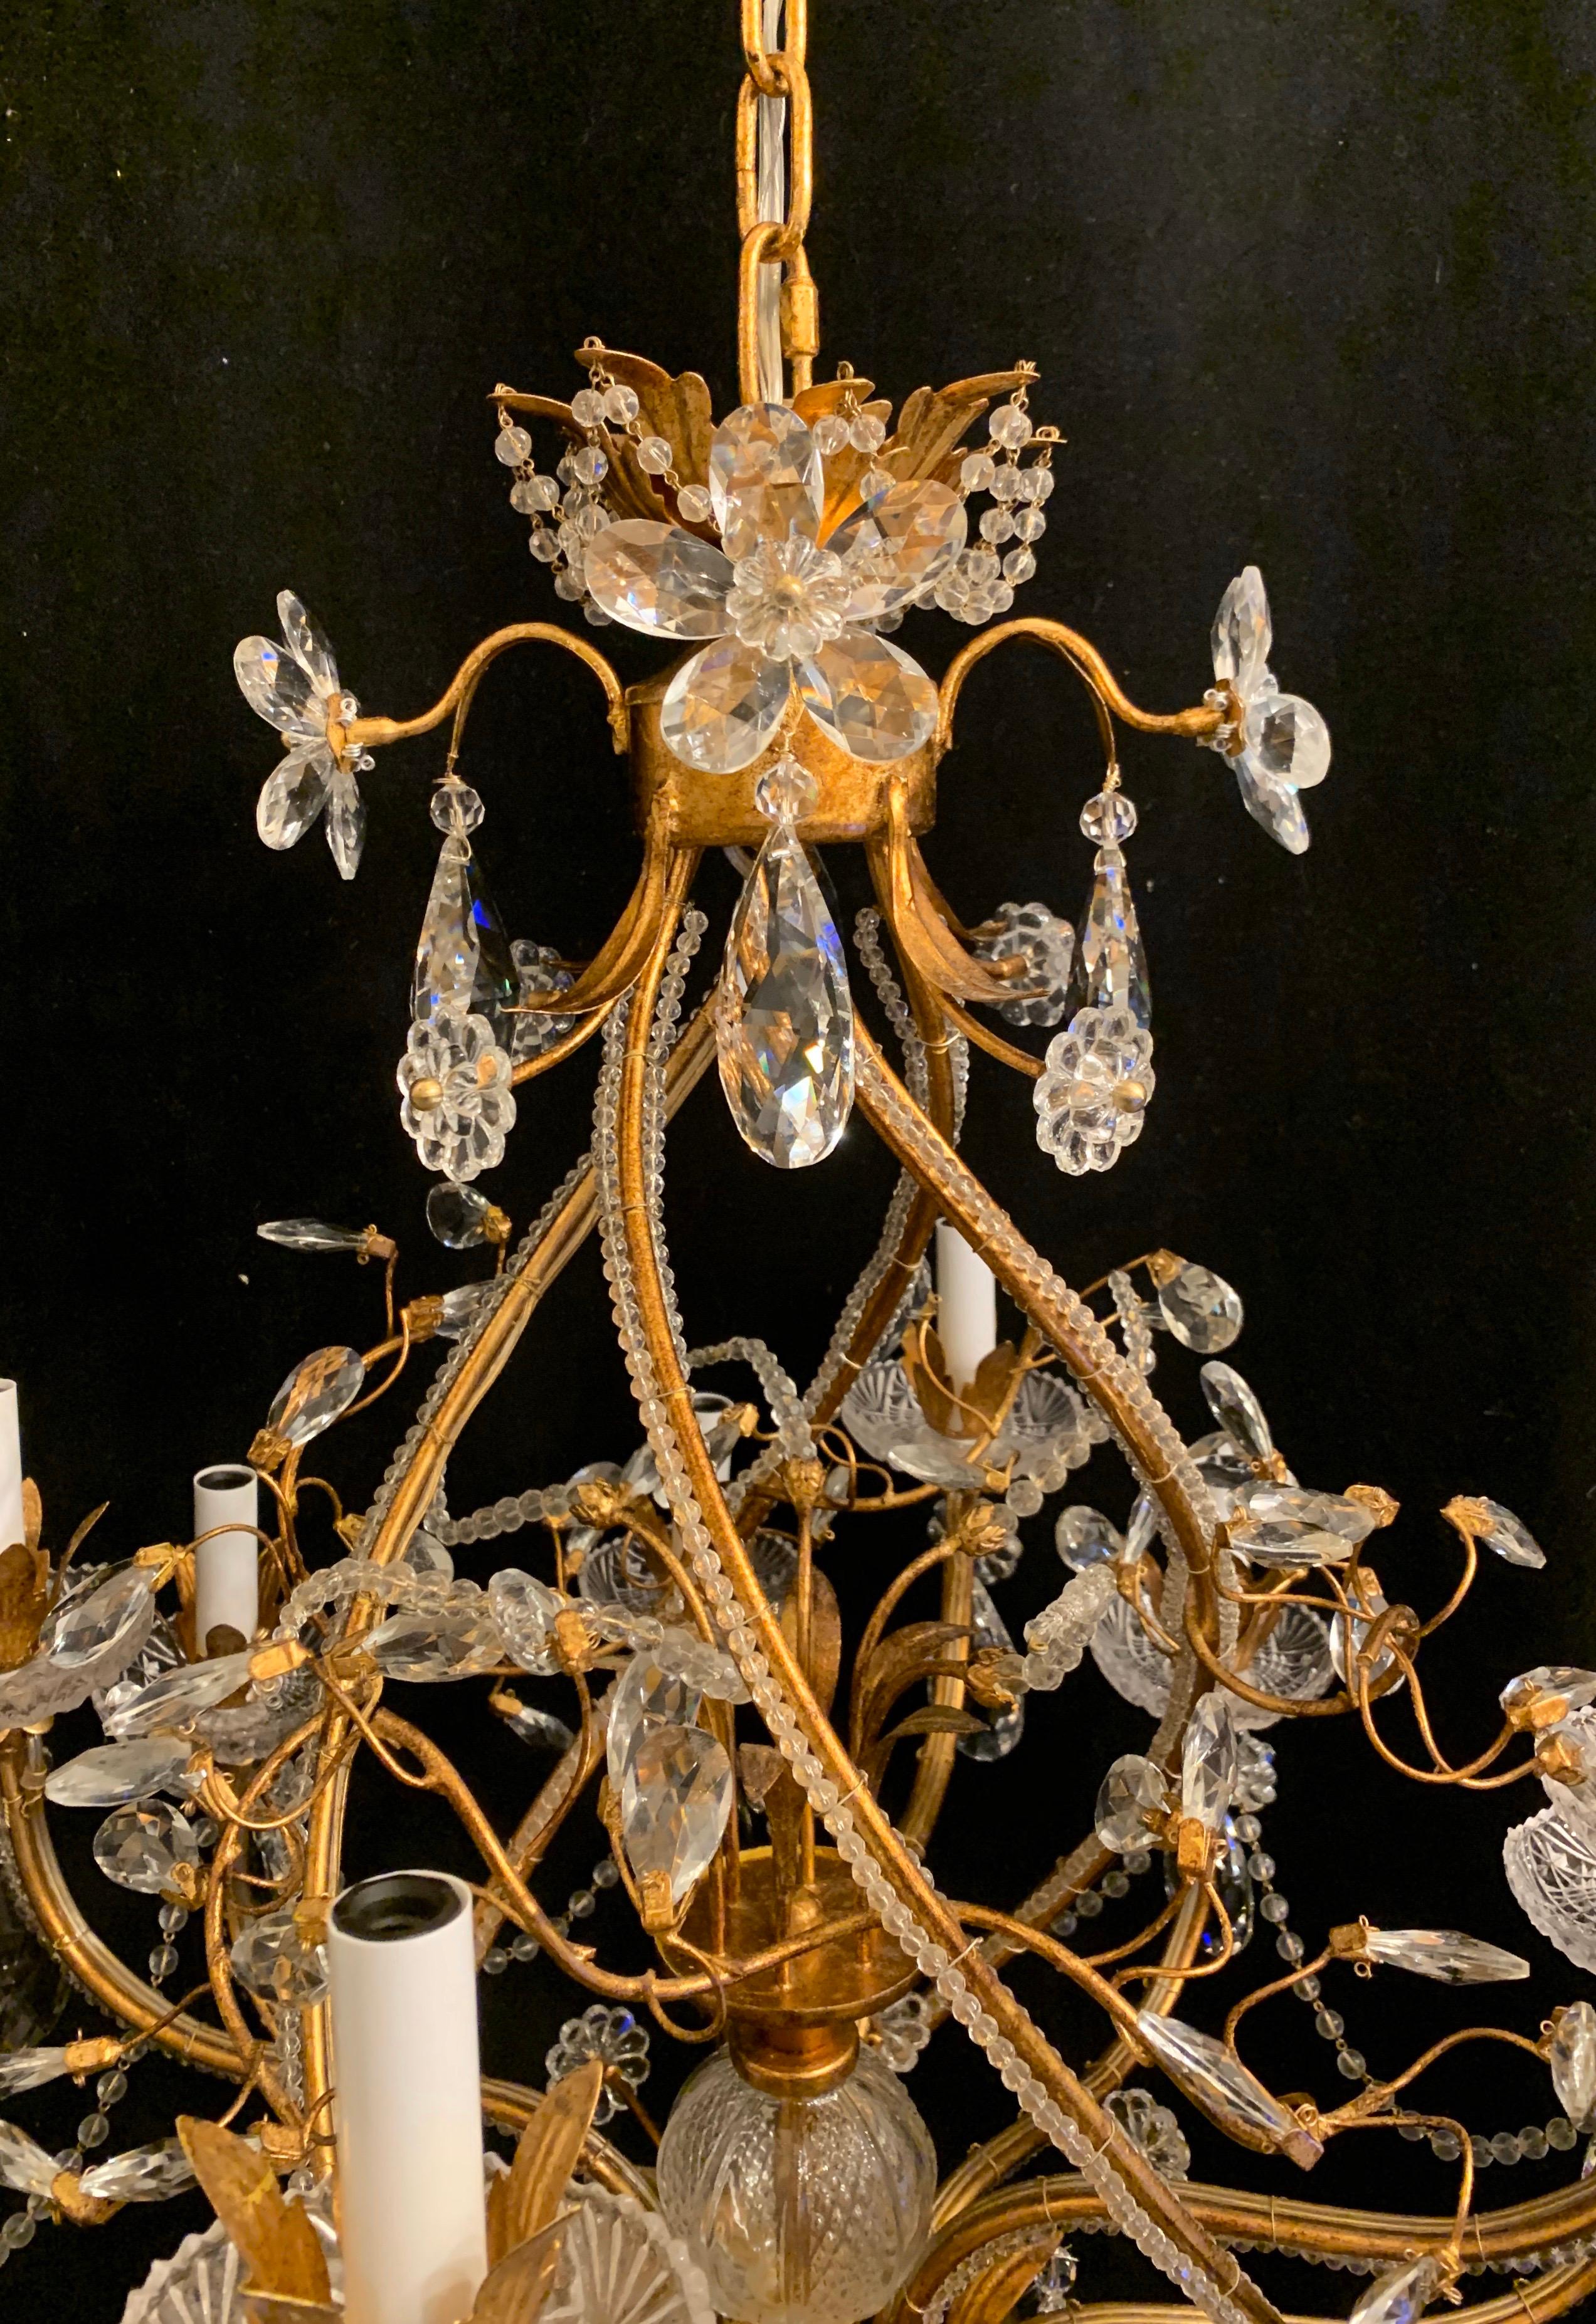 Eine wunderbare Übergangszeit Baguès / Jansen Stil 12 Kandelaber Licht Gold vergoldet Kristall Perlen Swags, Blumen und Kristall-Tropfen auf einer Spirale Form Kronleuchter.